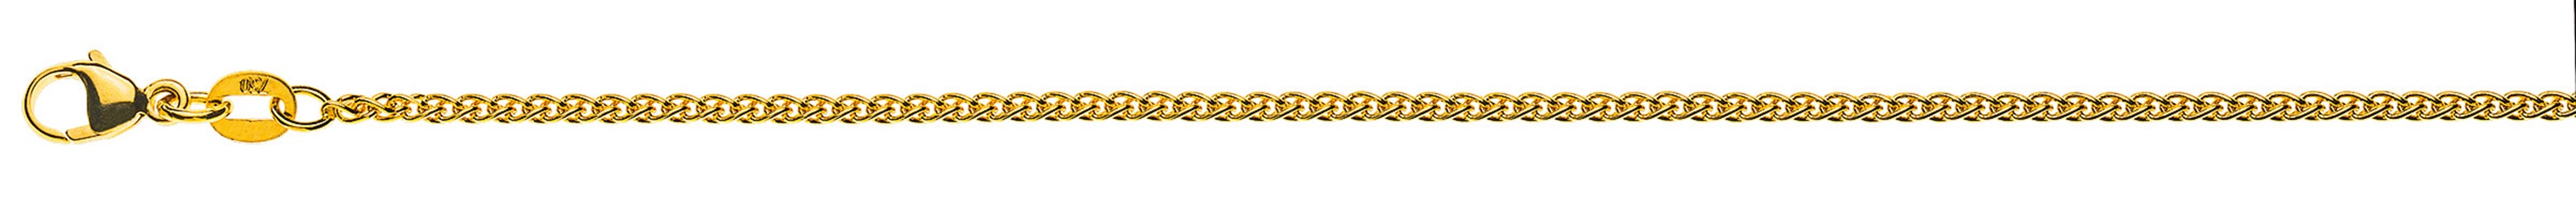 AURONOS Prestige Halskette Gelbgold 18K Zopfkette 42cm 1.6mm